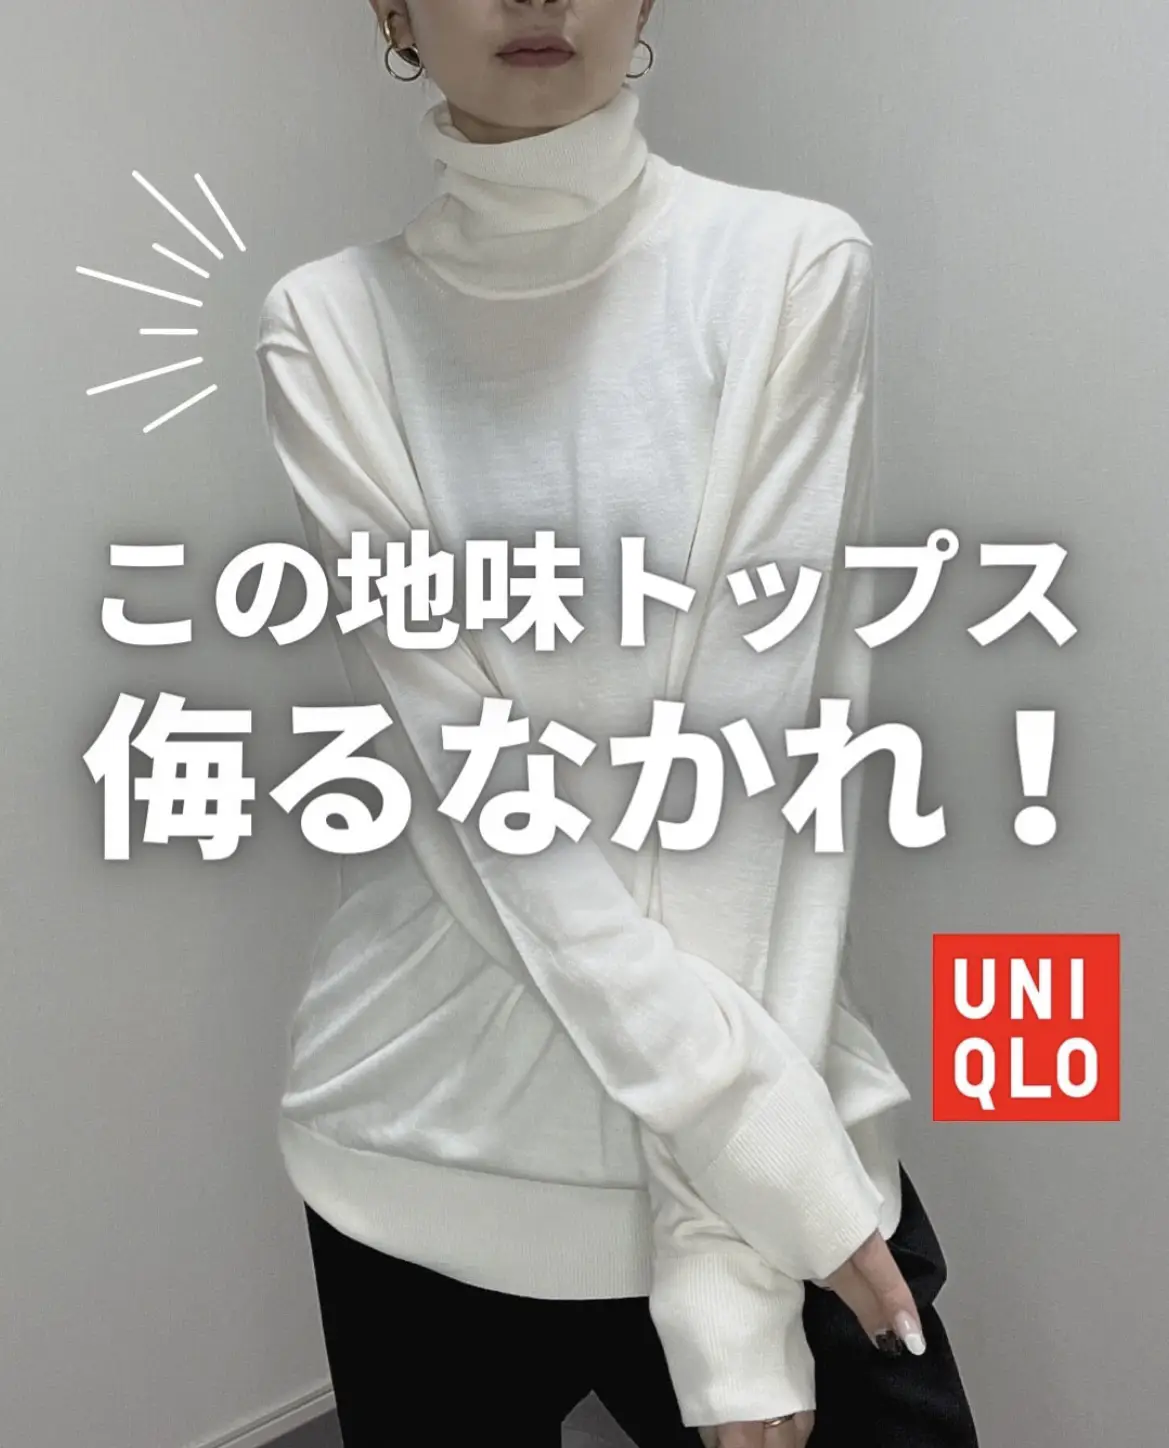 UNIQLO】メンズの隠れ名品👏重ね着に超超使えるタートルネック